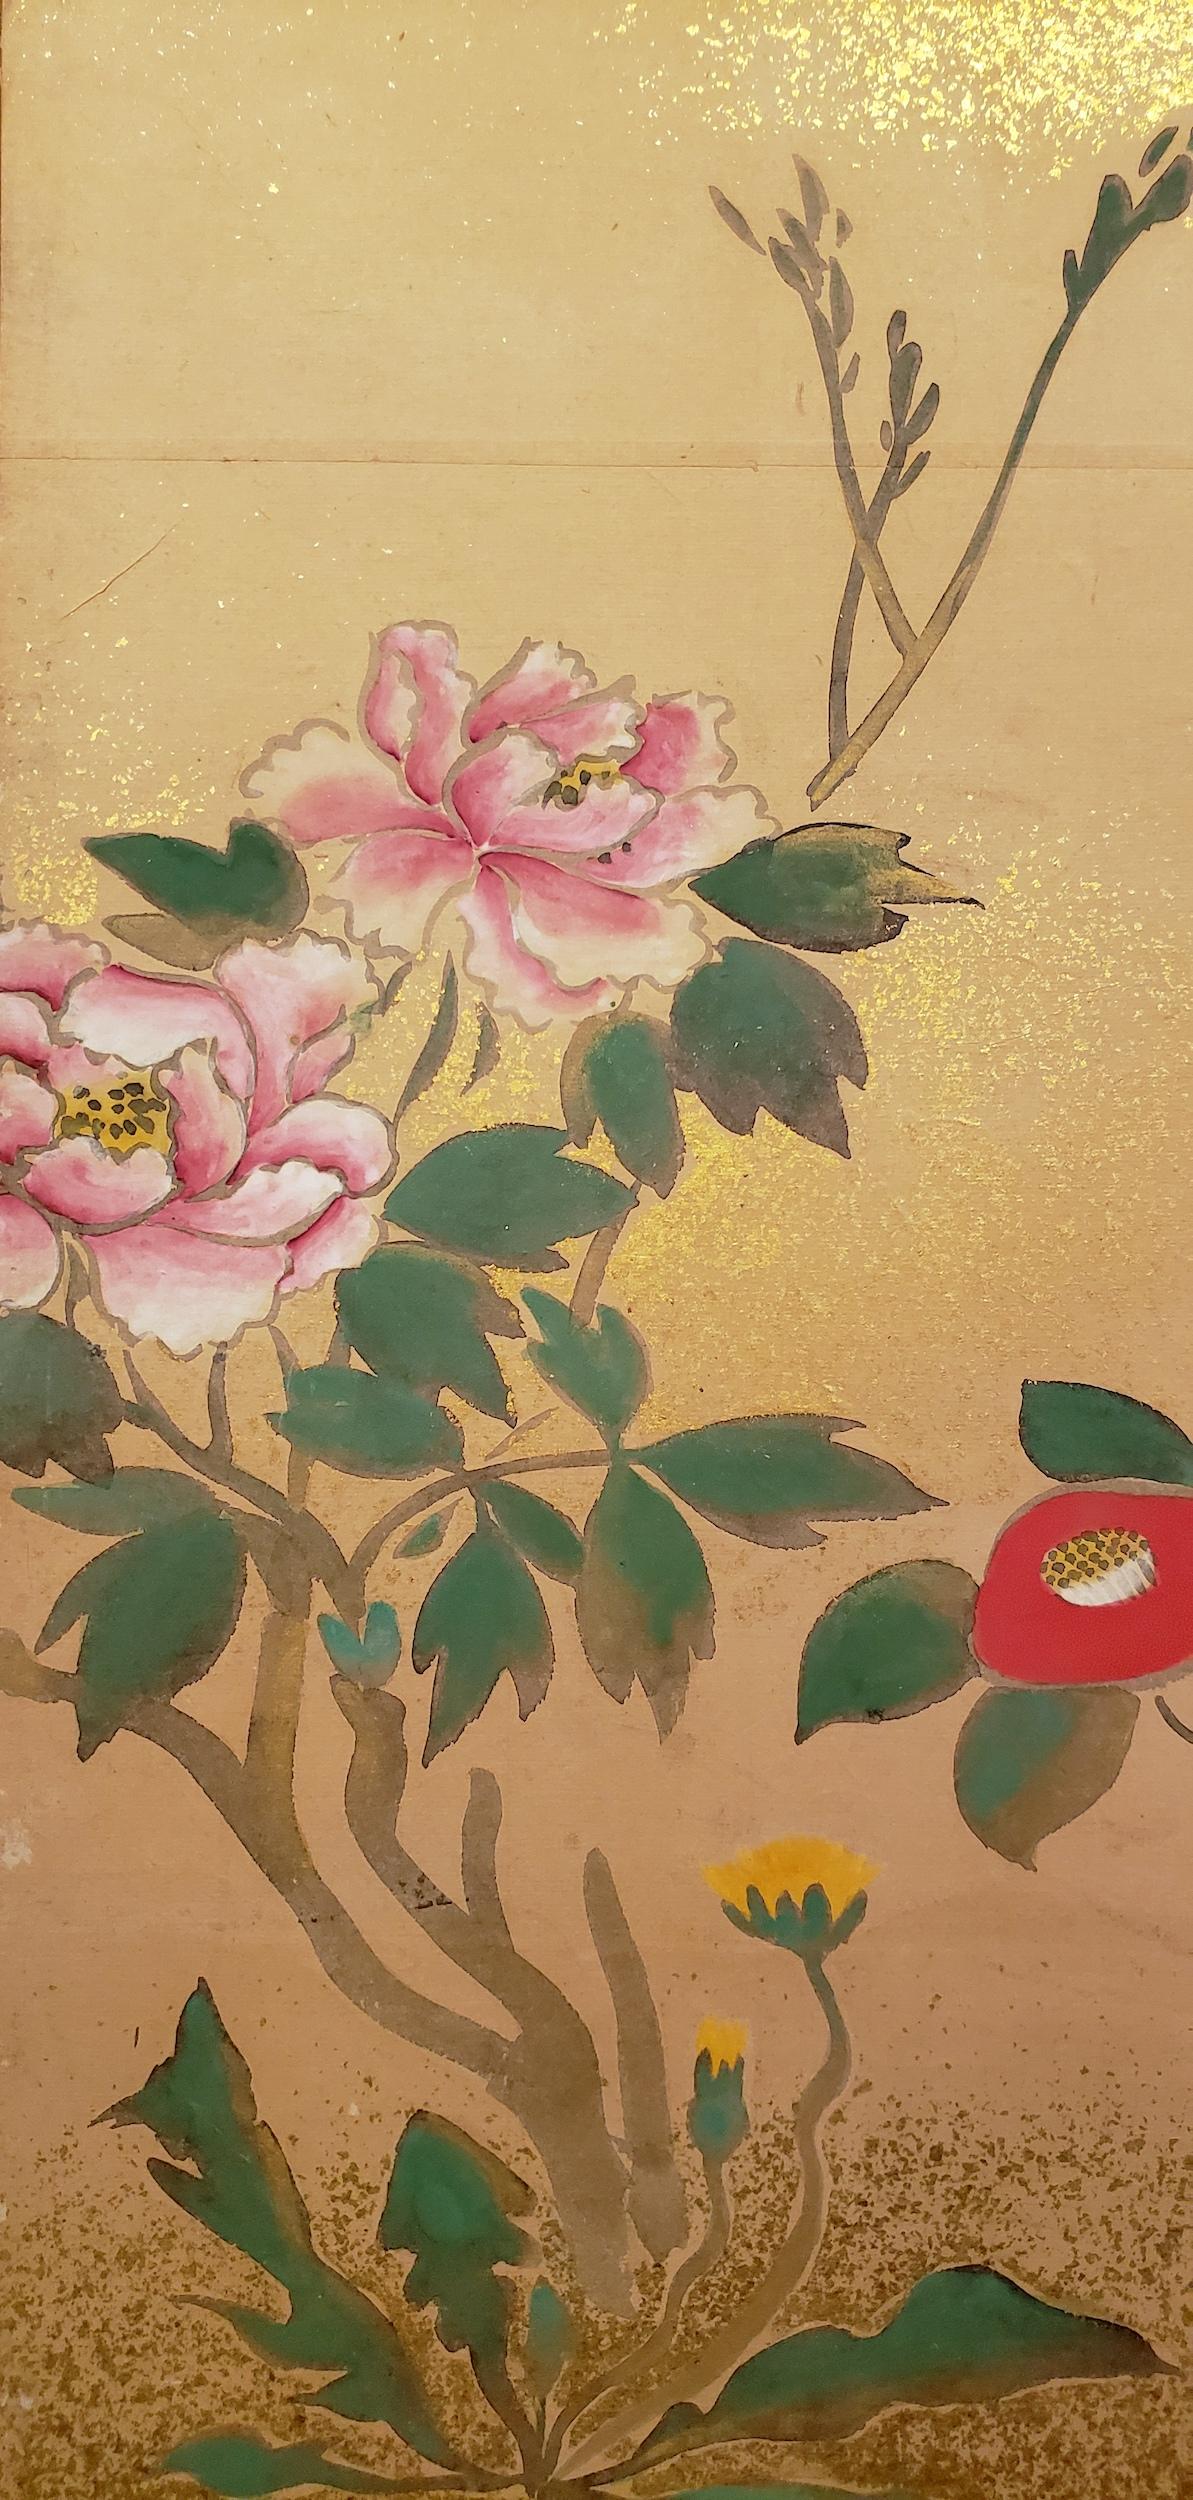 Écran japonais à quatre panneaux : Du début du printemps à l'été,  Peinture de la période Meiji (1868 -1912) représentant un prunier en fleurs avec des camélias rouges à droite, des pivoines et des chardons à gauche.  Des moineaux explorent le sol